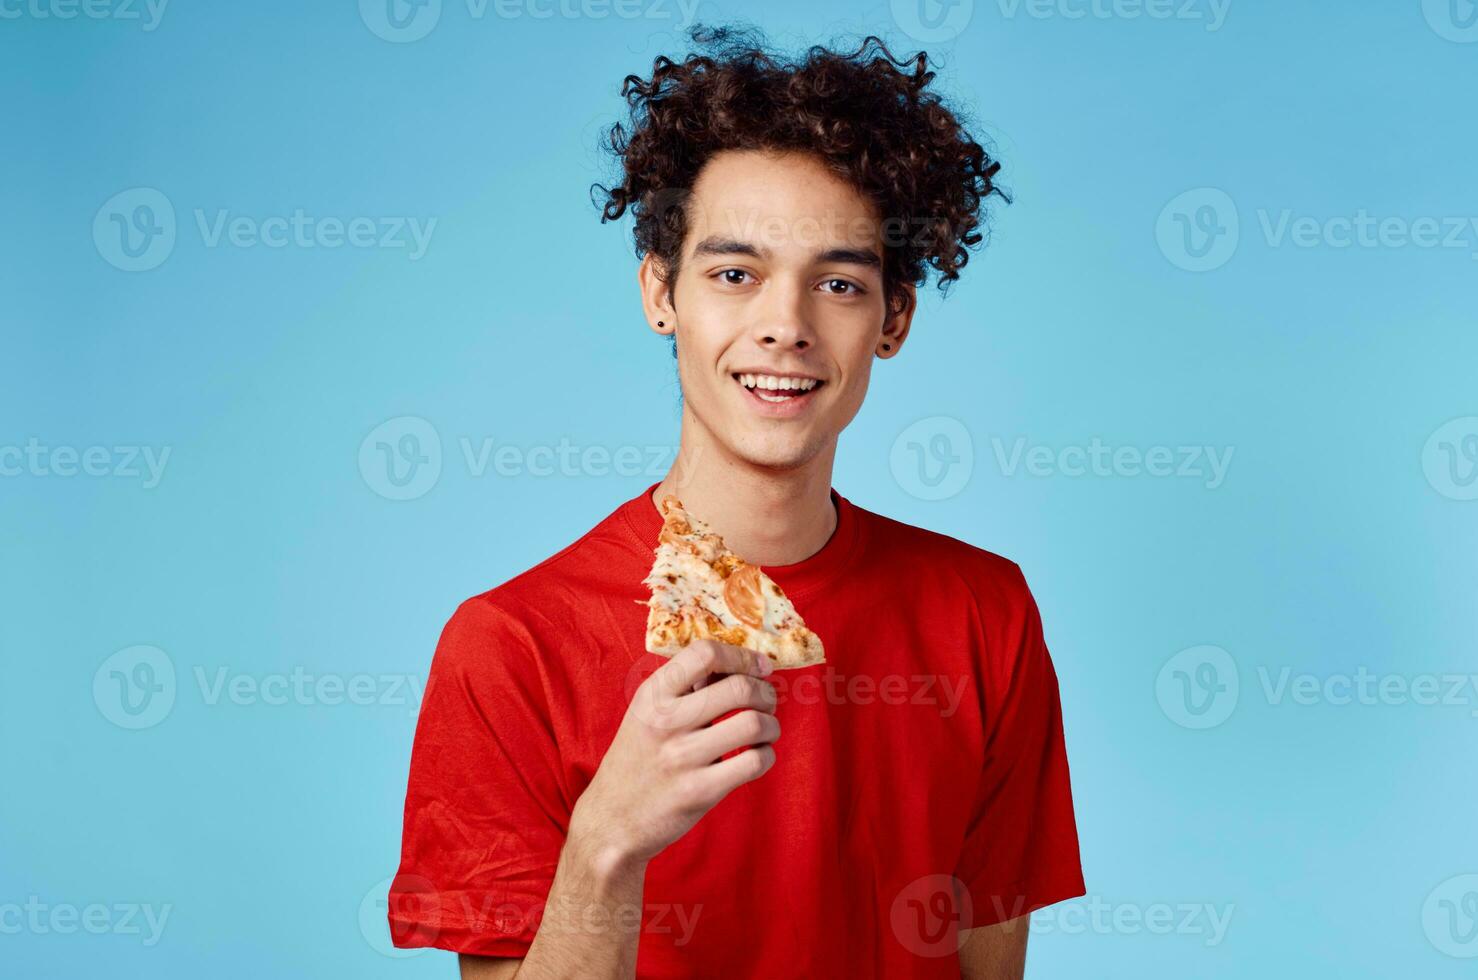 vent waar is hij en haar- in een rood t-shirt met een plak van pizza Aan een blauw achtergrond foto